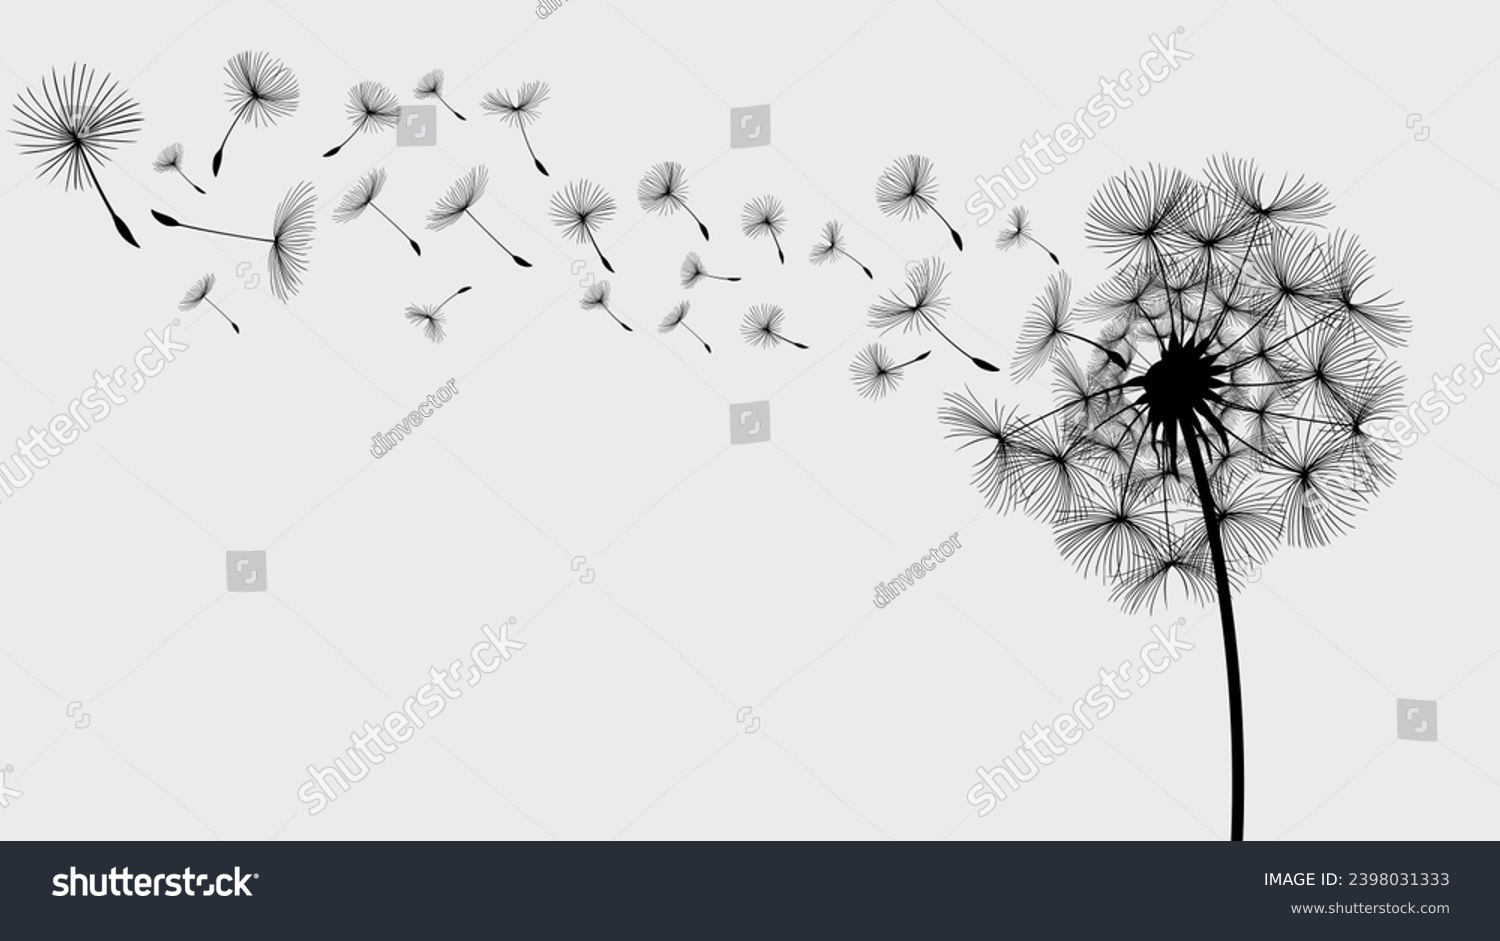 SVG of Vector illustration dandelion seed blowing in the wind. Dandelion seed icon. Dandelion on a white background. Vector illustration svg